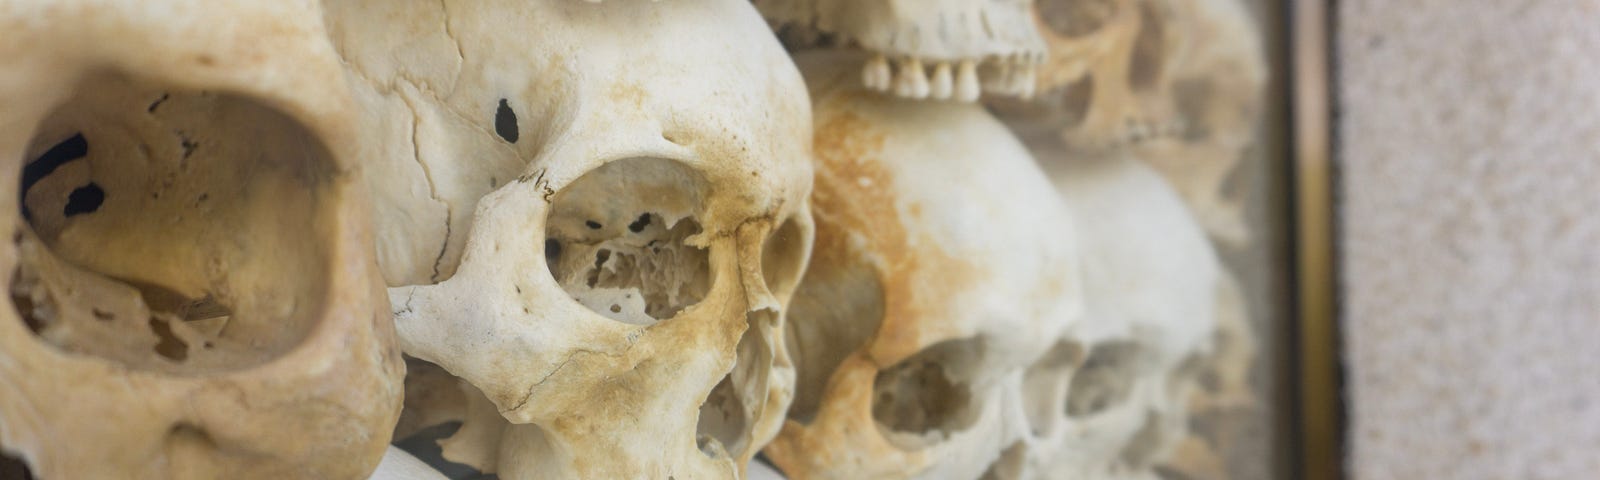 Three rows of skulls.